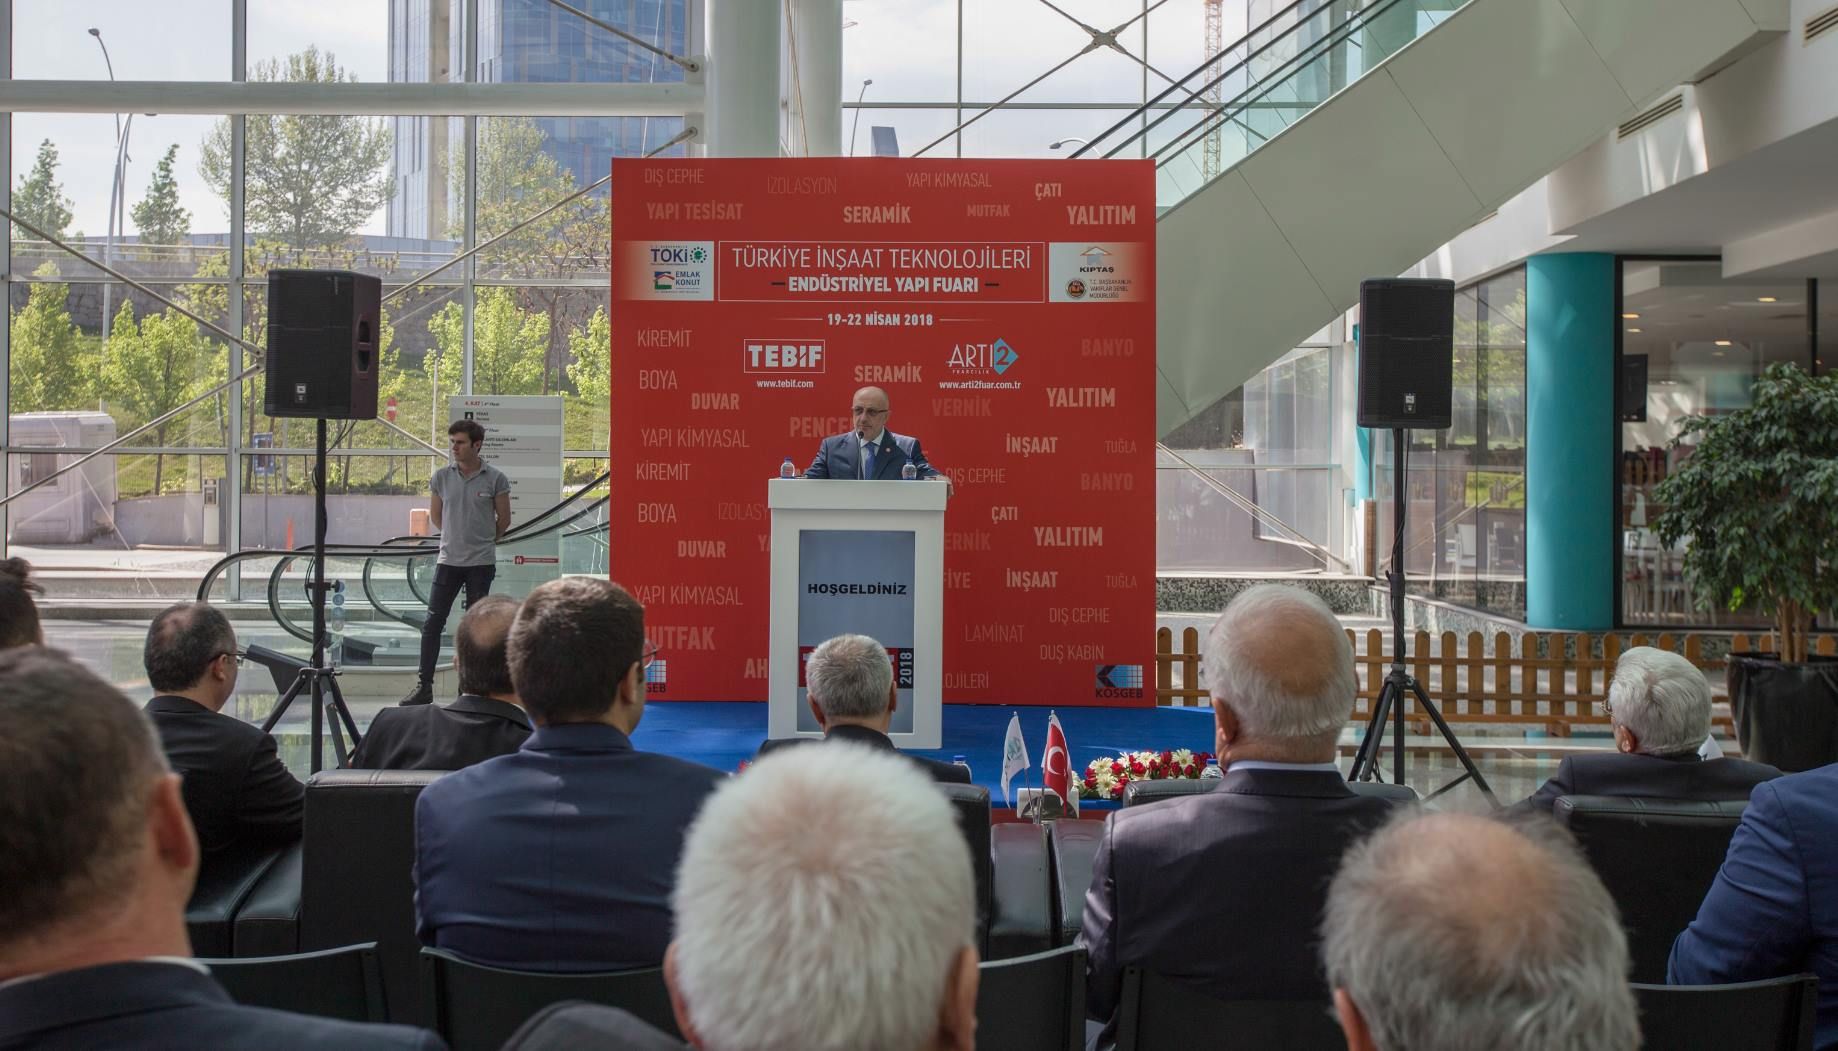 التقى TEBIF 2018 بزواره في مركز أنقرة Congresium Fair Center